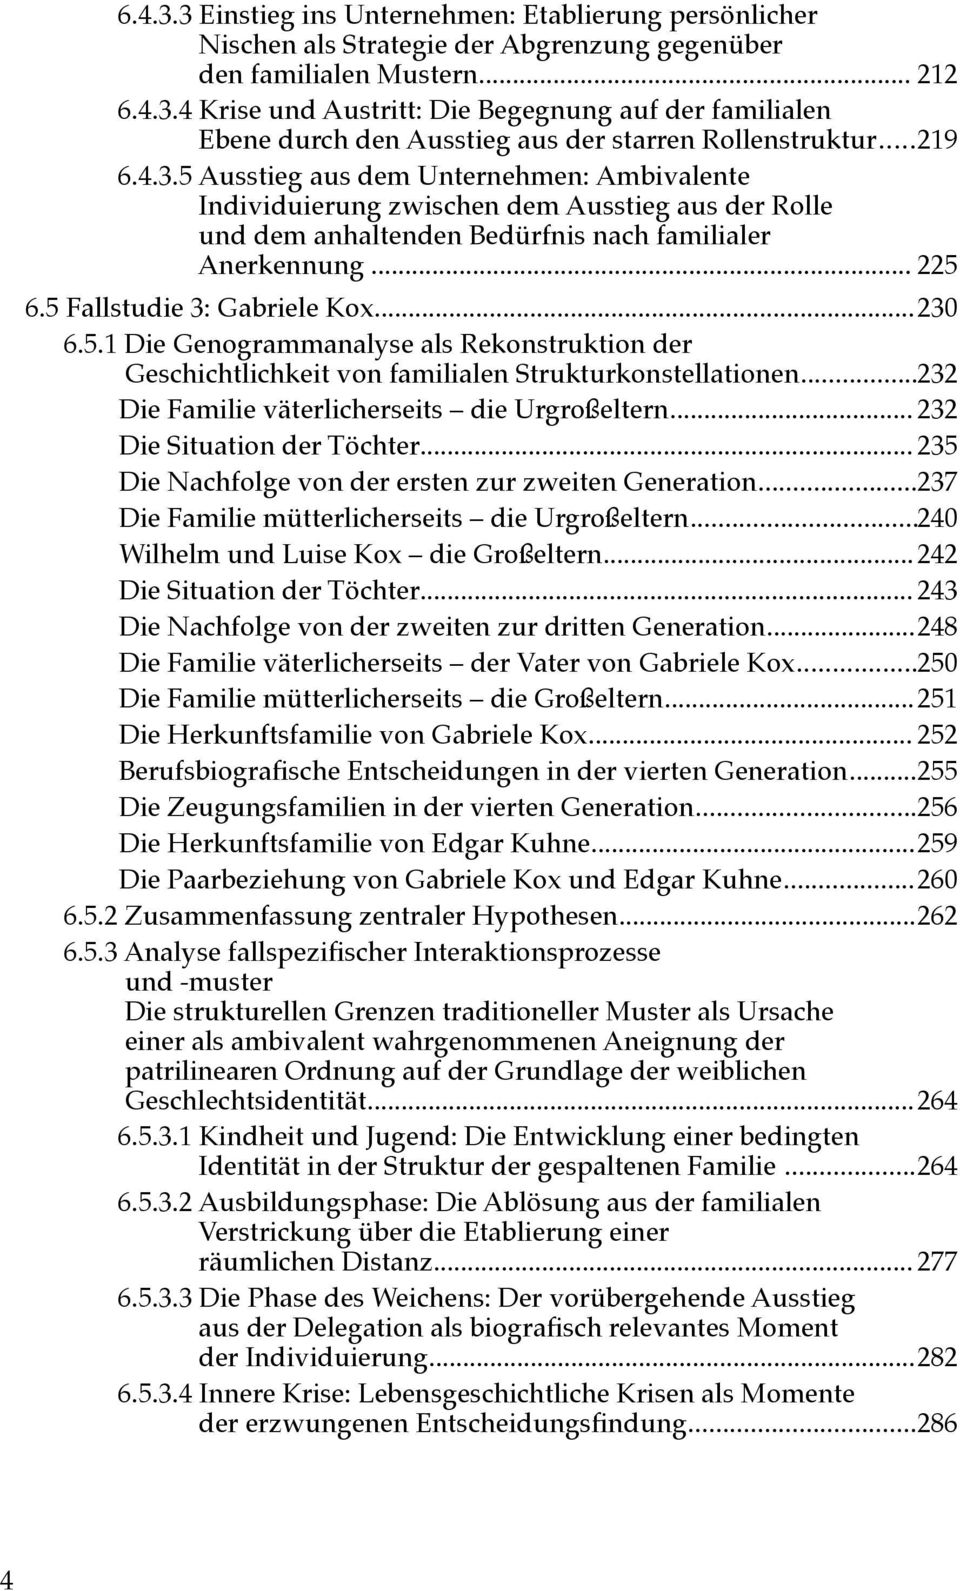 5 Fallstudie 3: Gabriele Kox...230 6.5.1 Die Genogrammanalyse als Rekonstruktion der Geschichtlichkeit von familialen Strukturkonstellationen...232 Die Familie väterlicherseits die Urgroßeltern.